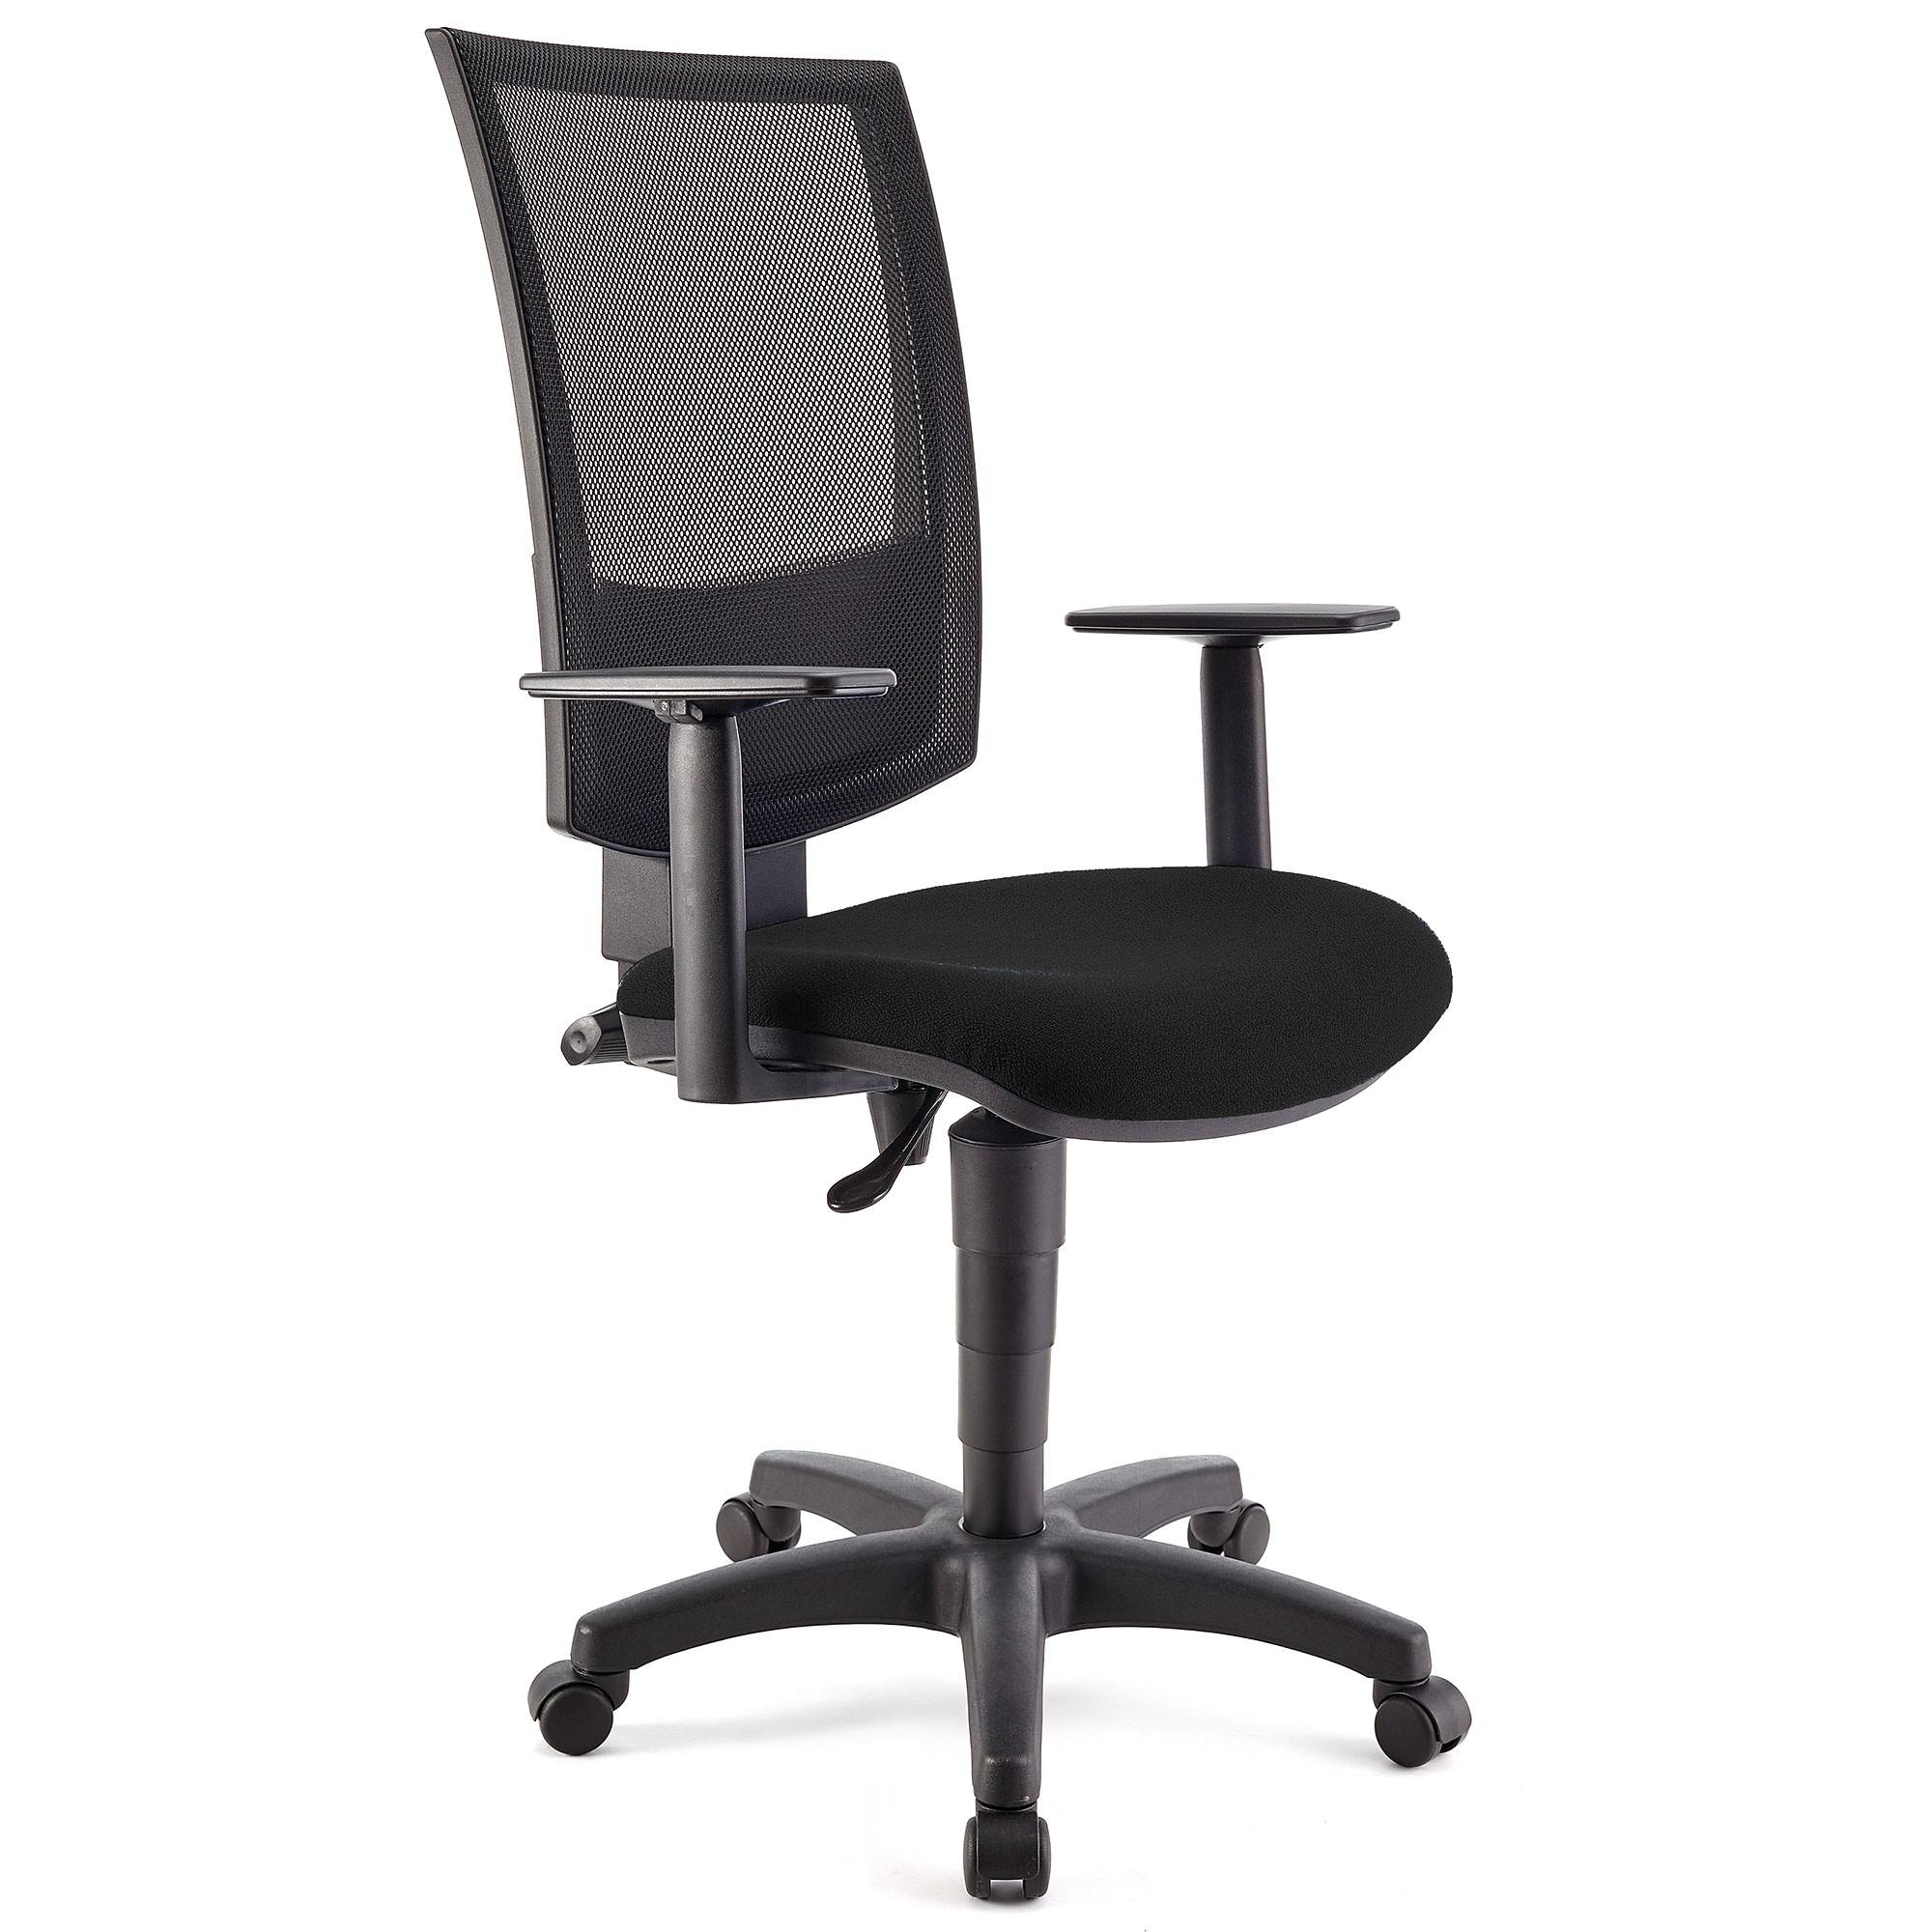 Bürostuhl PANDORA PLUS mit verstellbaren Armlehnen, Rückenlehne mit Netzbezug, dicke Polsterung, Farbe Schwarz